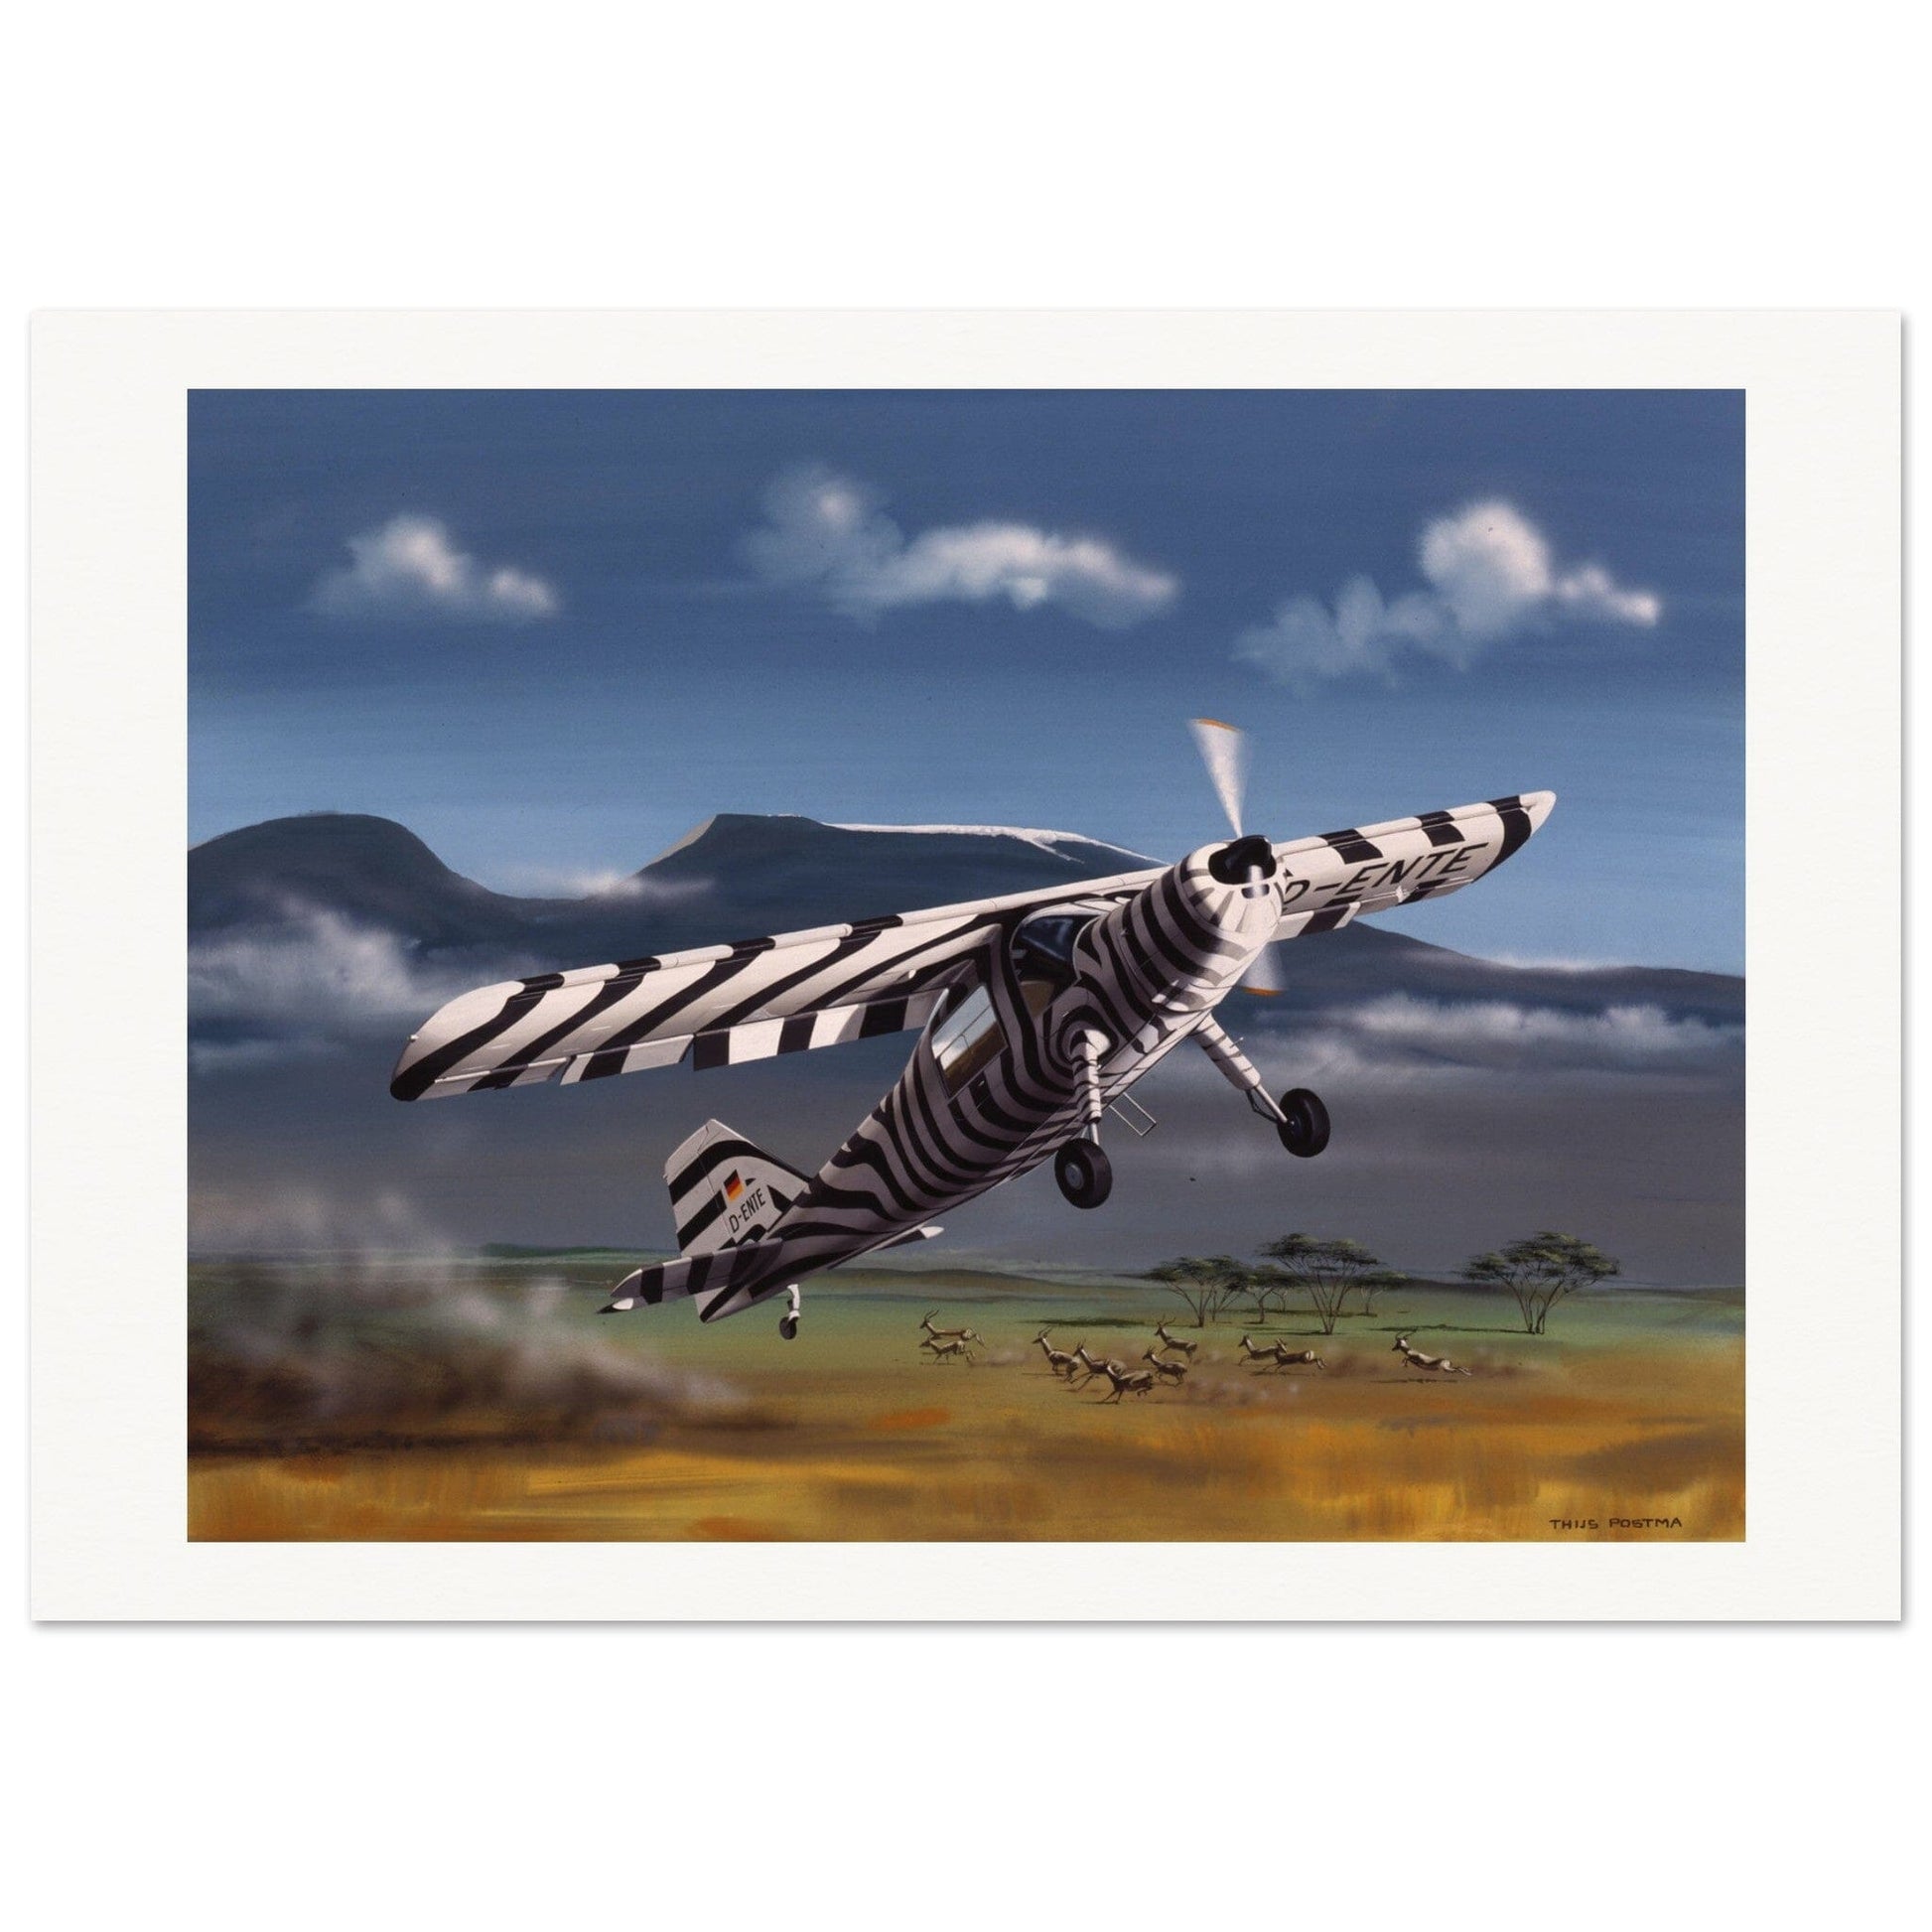 Thijs Postma - Poster - Dornier Do 27 Grzimek Serengeti Poster Only TP Aviation Art 70x100 cm / 28x40″ 